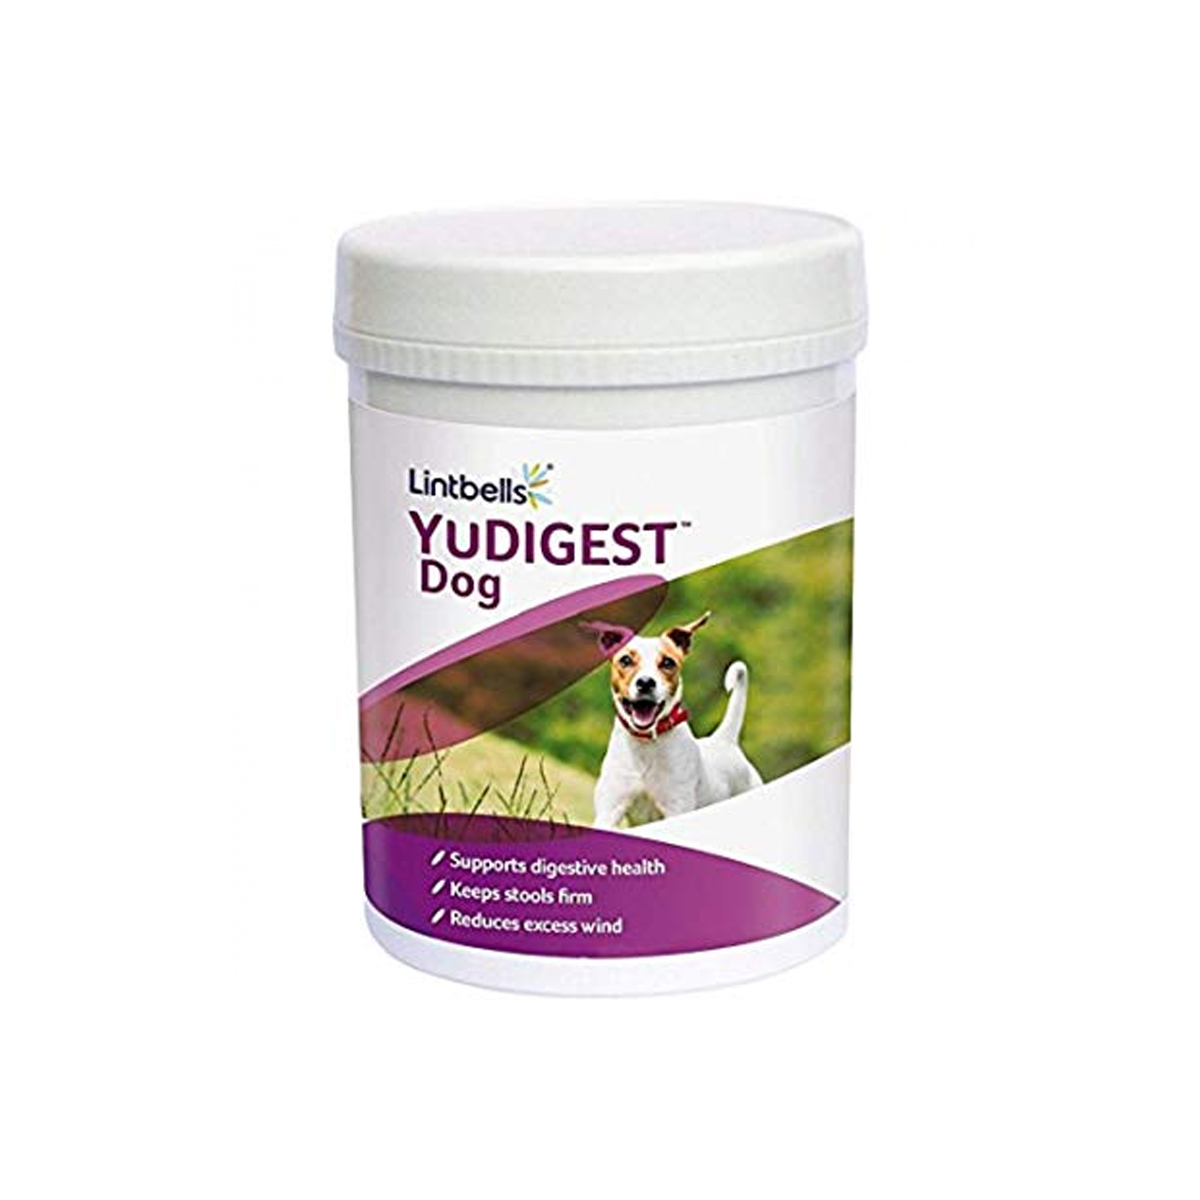 Supliment digestiv, YuDIGEST Dog, 300 tablete Lintbells